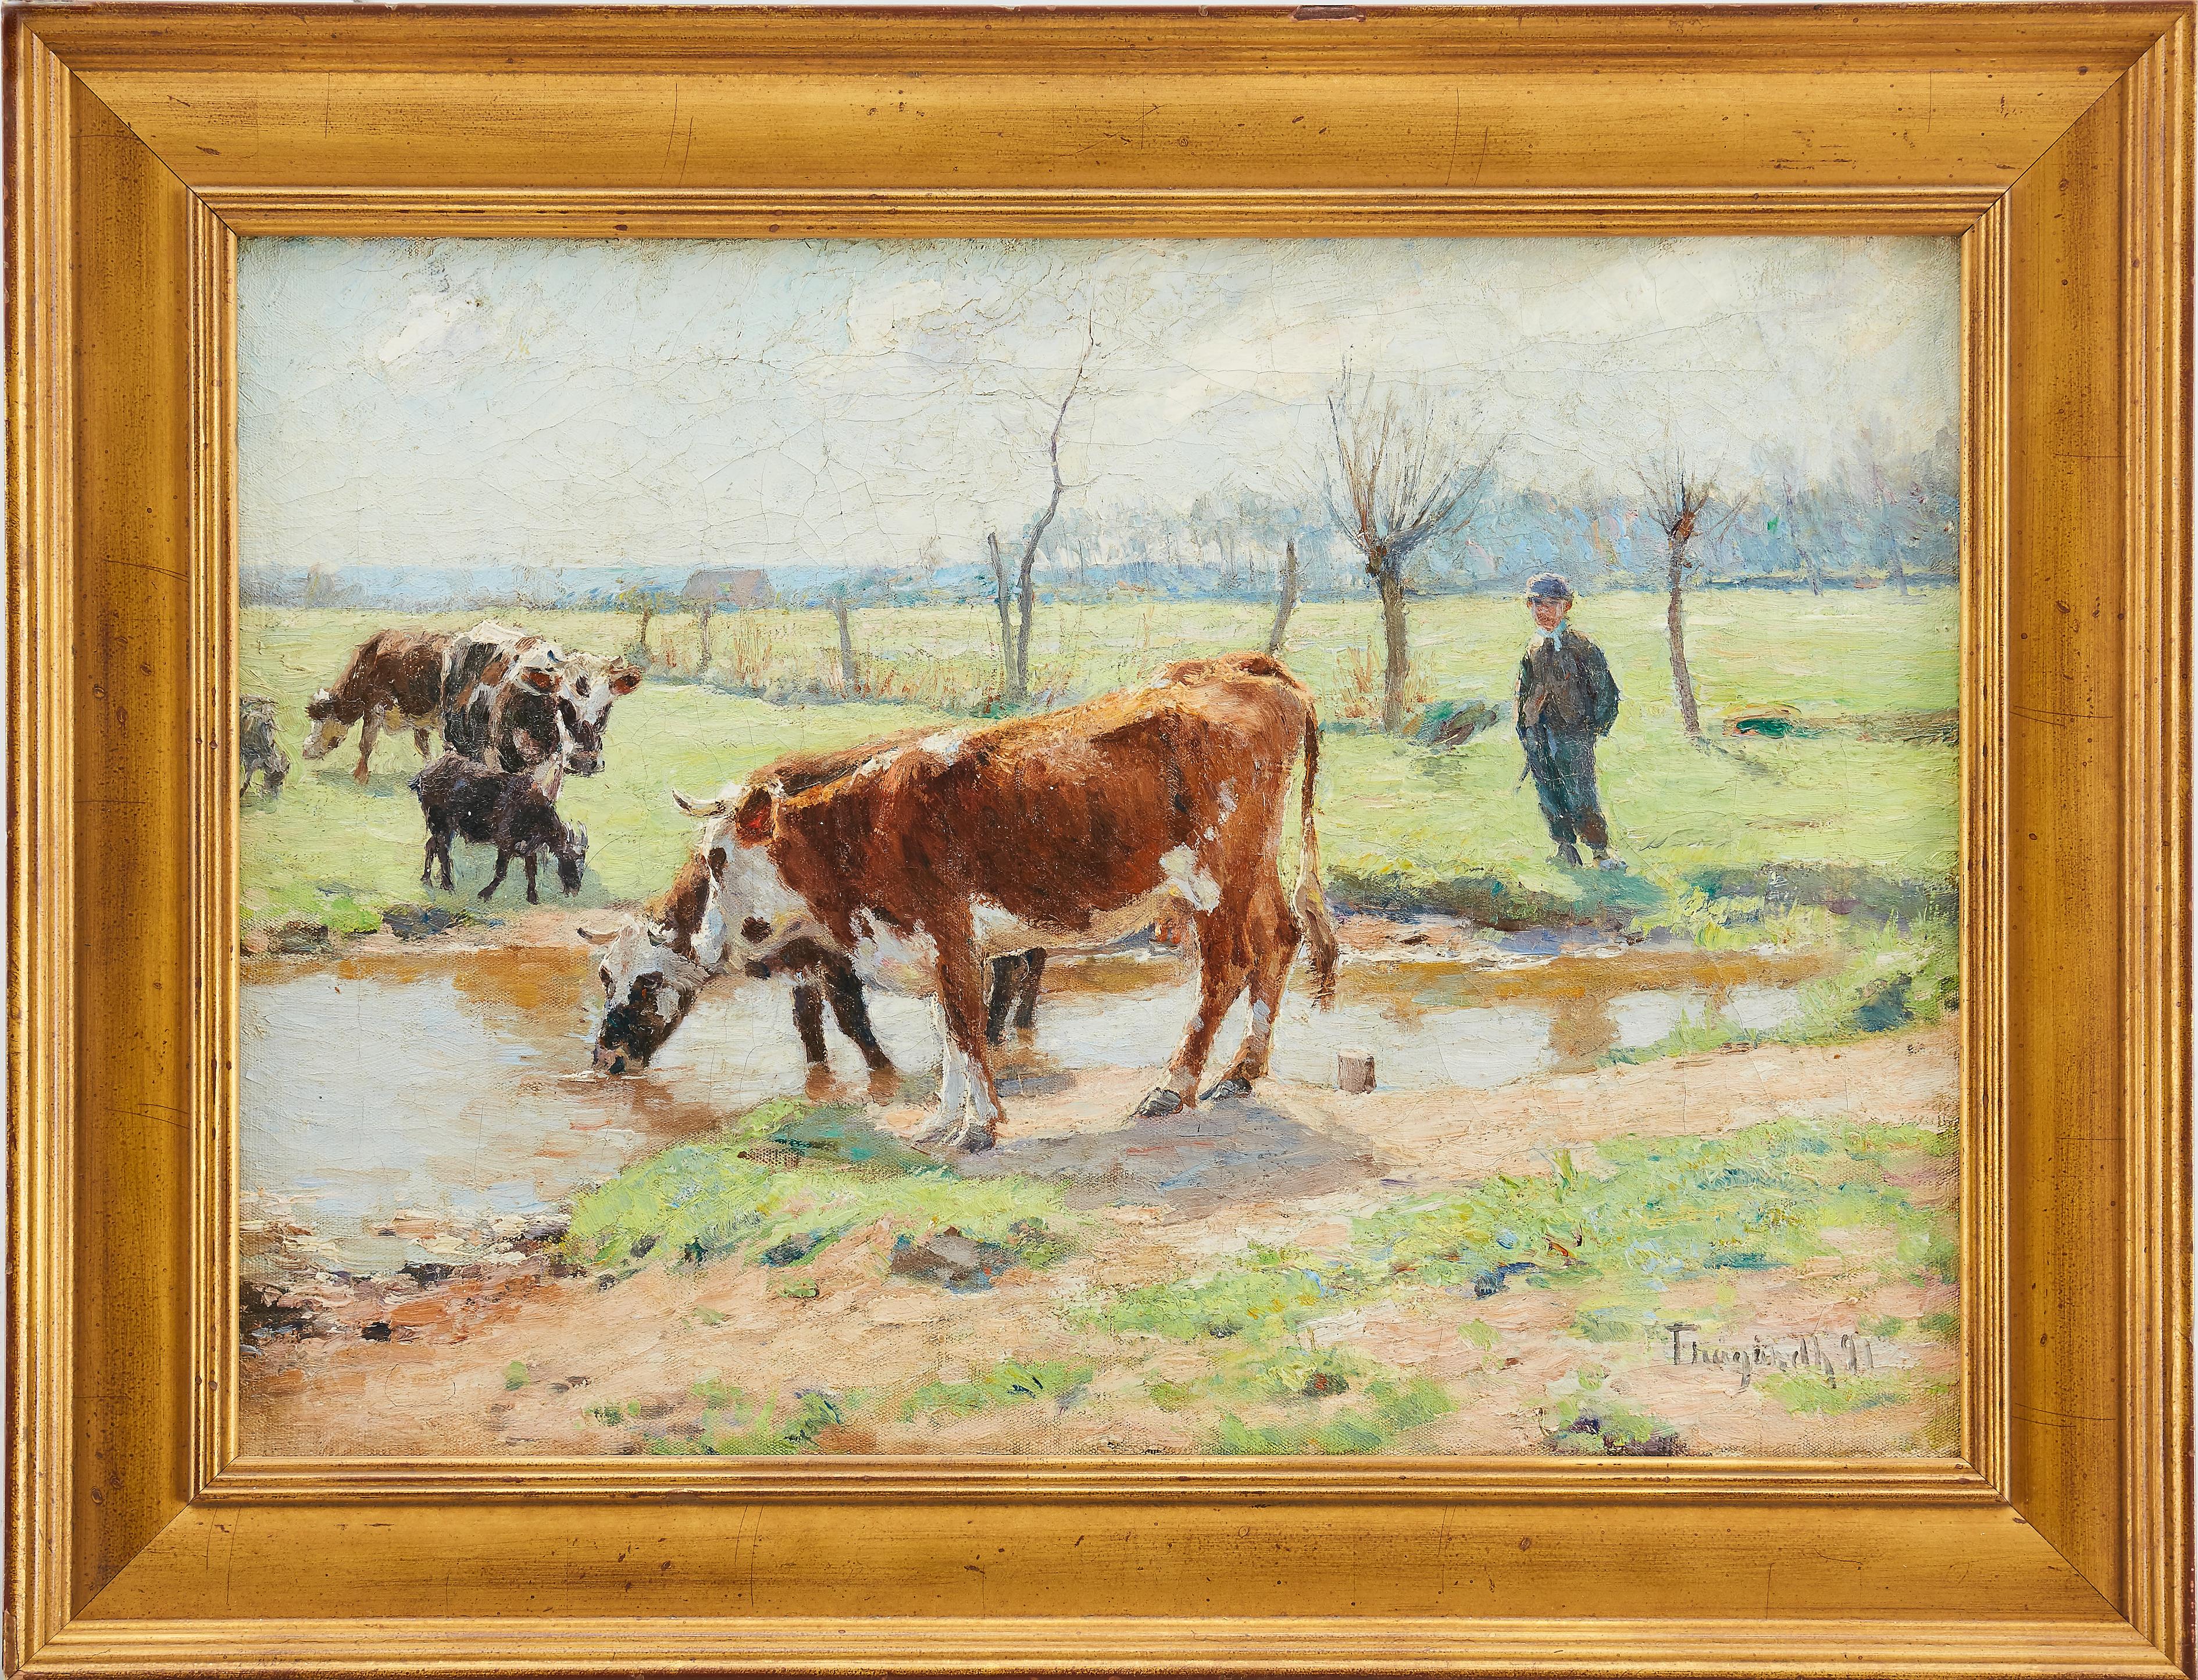 Farmer Boy With Cows in a Landscape, Swedish Artist Carl Trägårdh, Impressionist